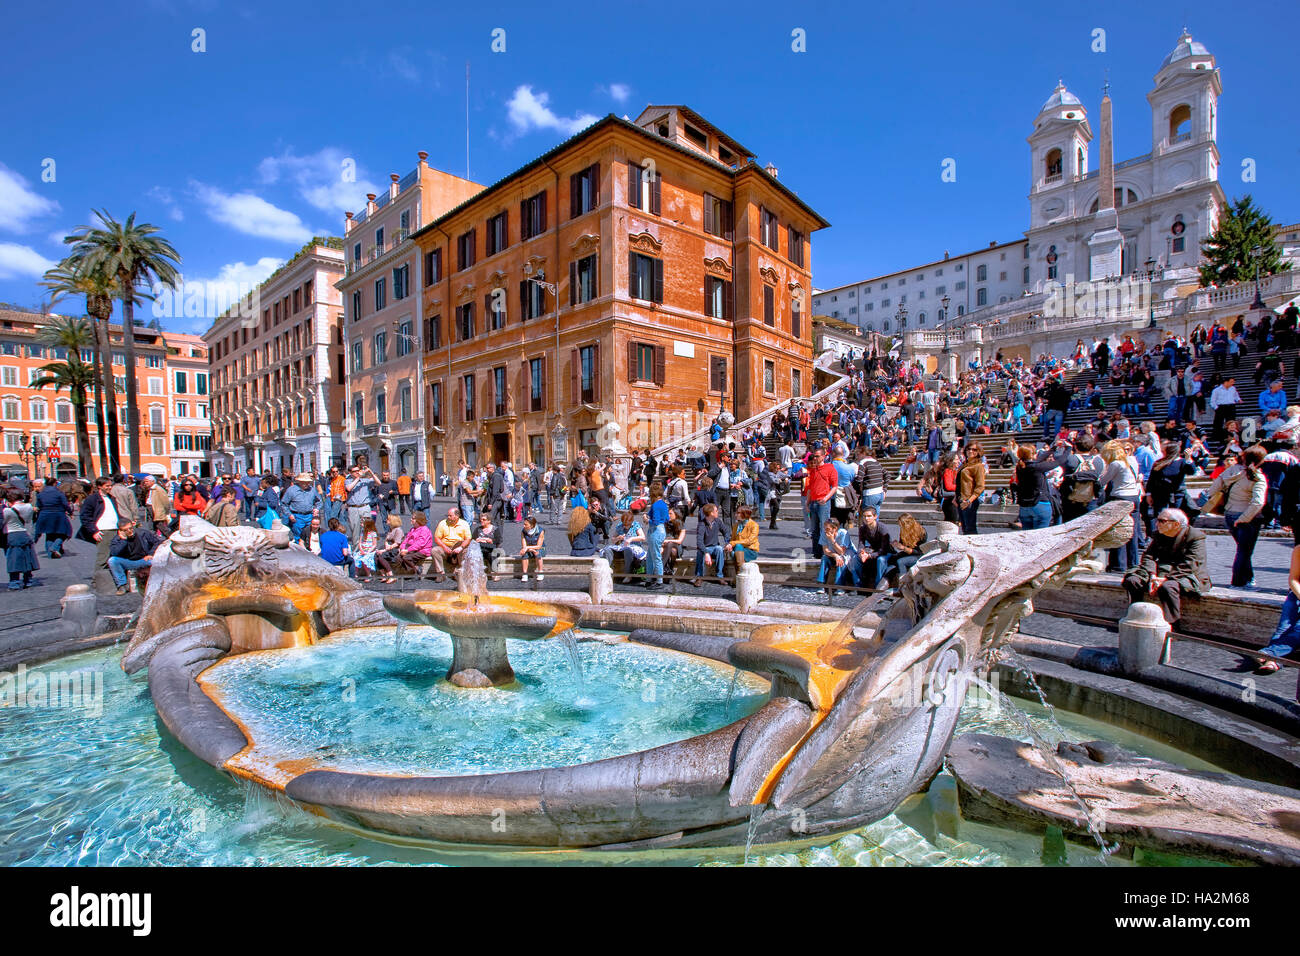 Fontana della Barcaccia fountain  in Piazza di Spagna, Rome, Italy Stock Photo